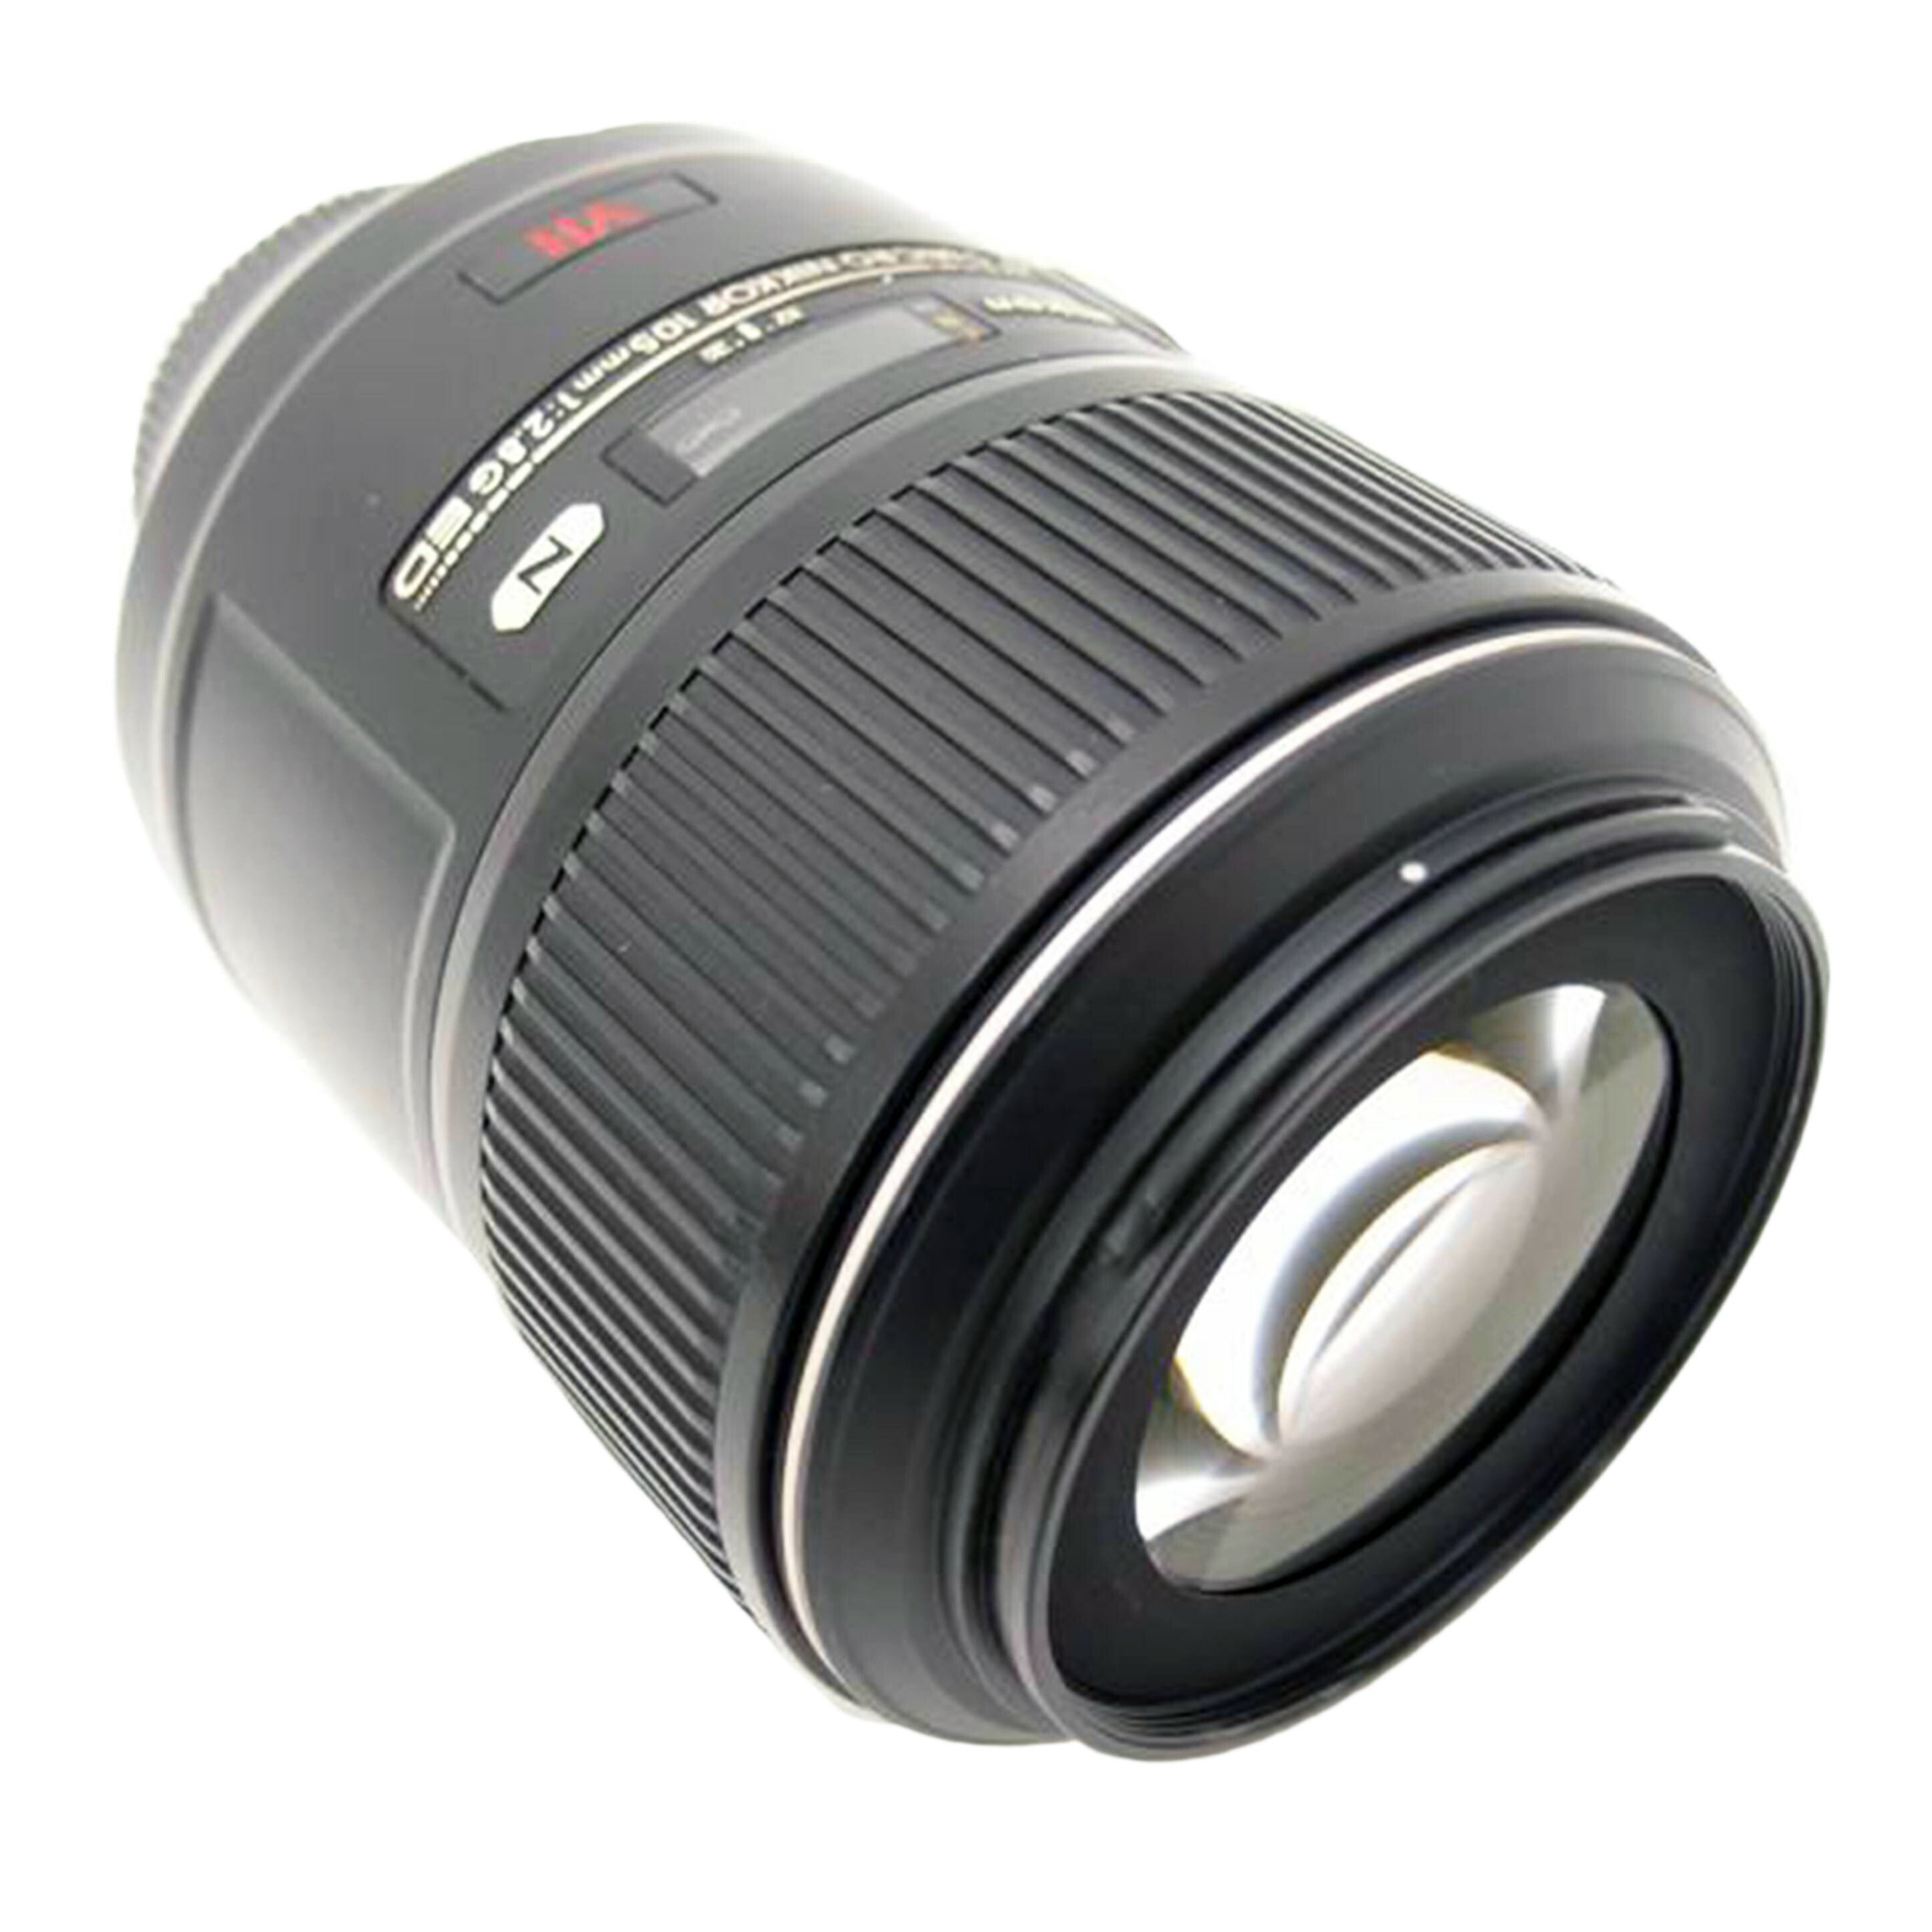 Ｎｉｋｏｎ ニコン/交換レンズ/AF-S VR Micro-Nikkor 105mm f/2.8G IF-ED//232817/Bランク/69